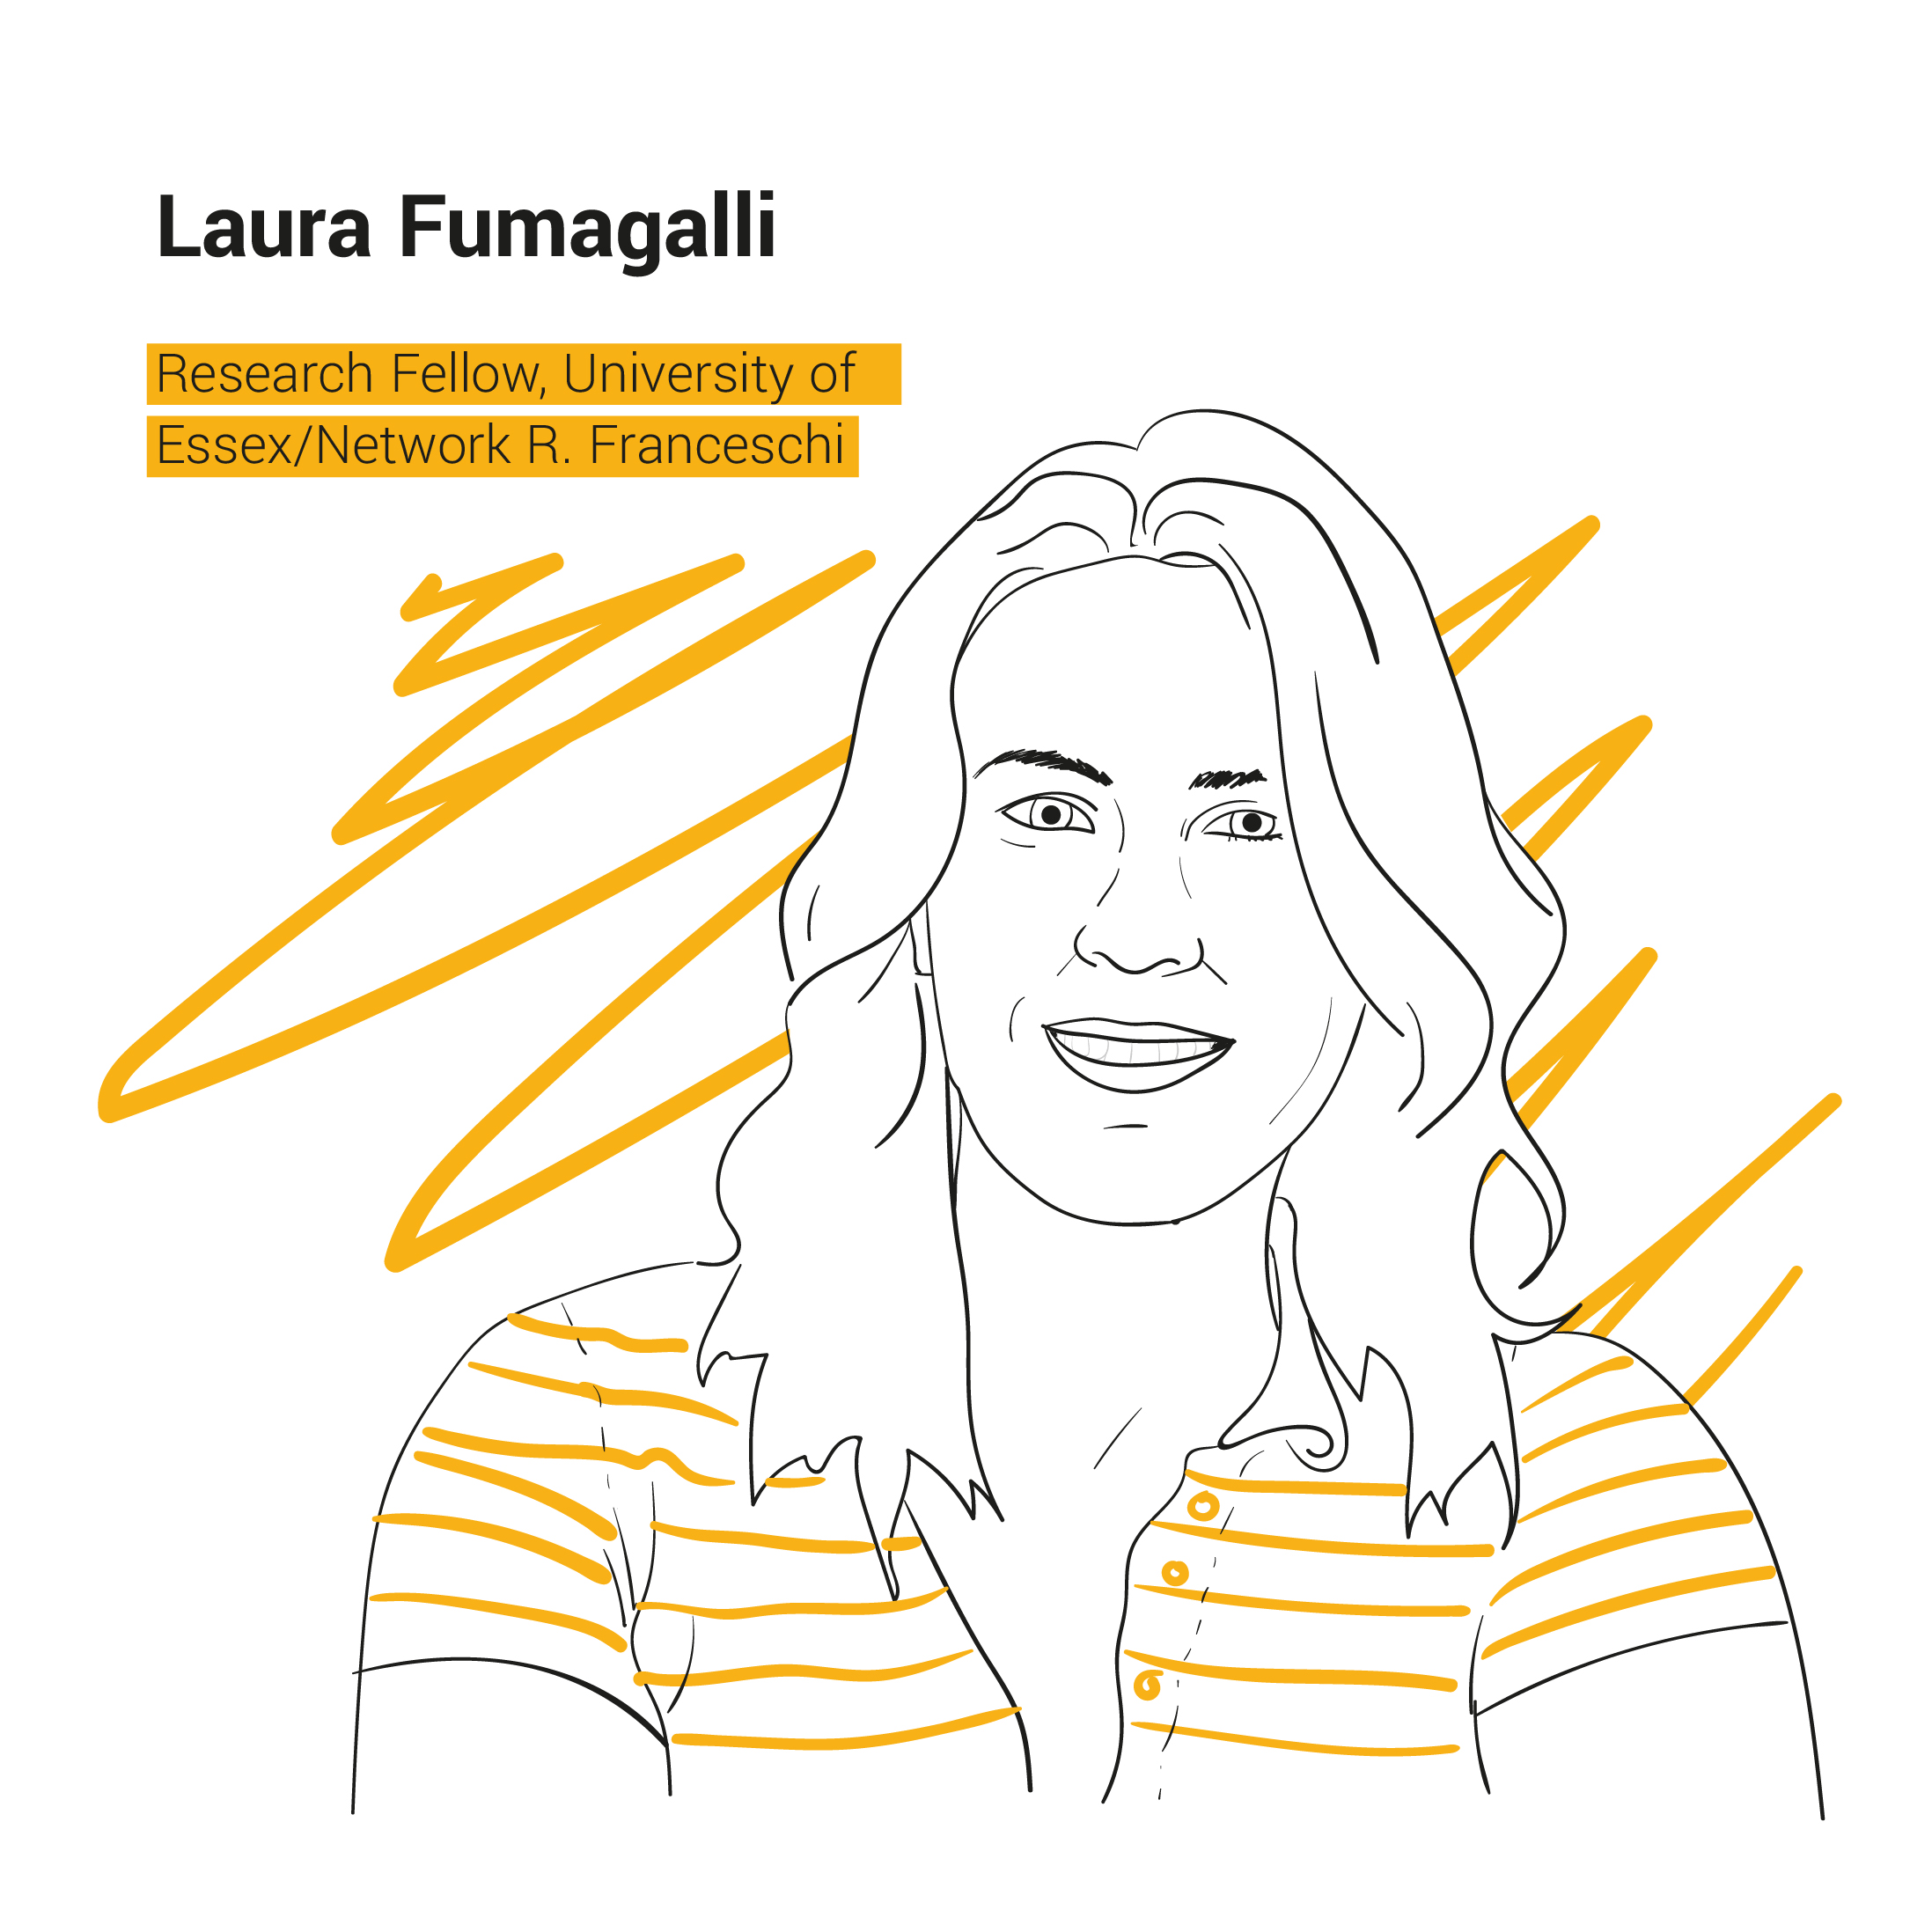 Laura Fumagalli